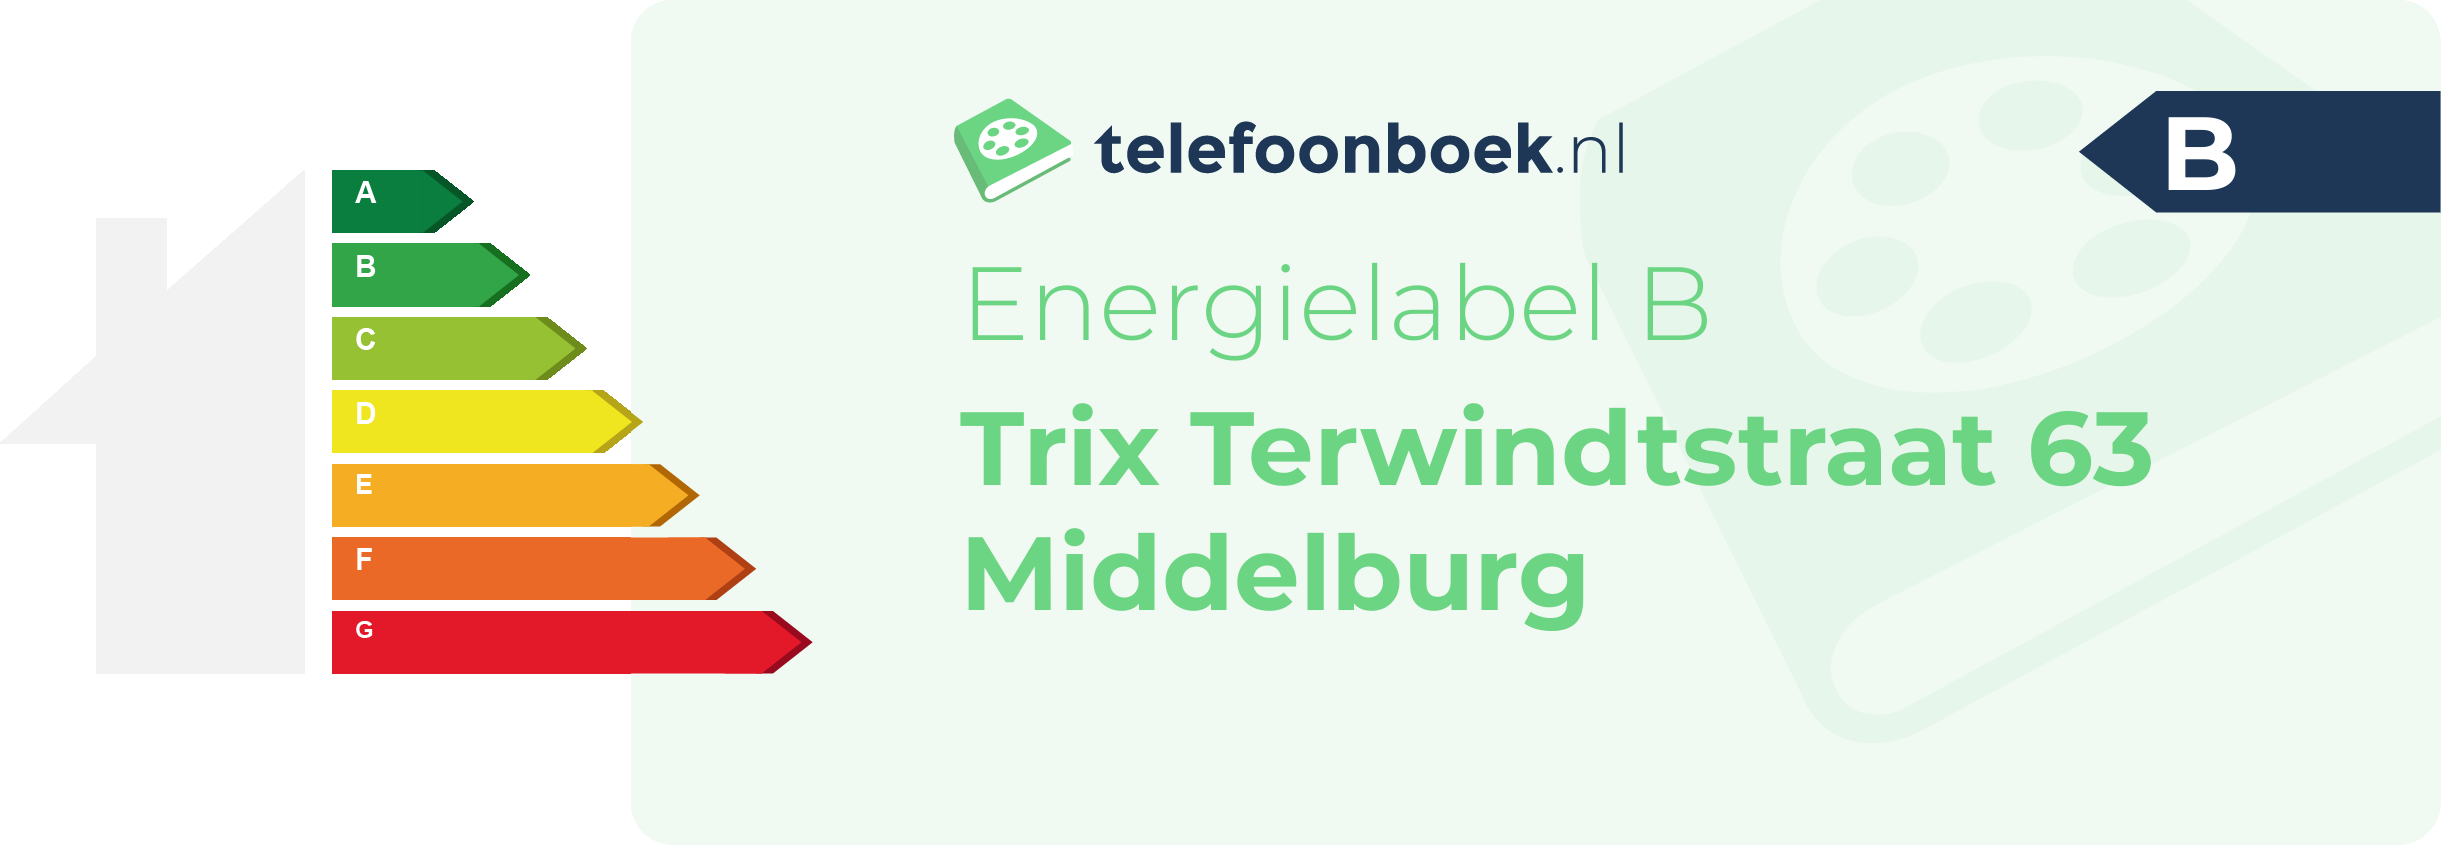 Energielabel Trix Terwindtstraat 63 Middelburg